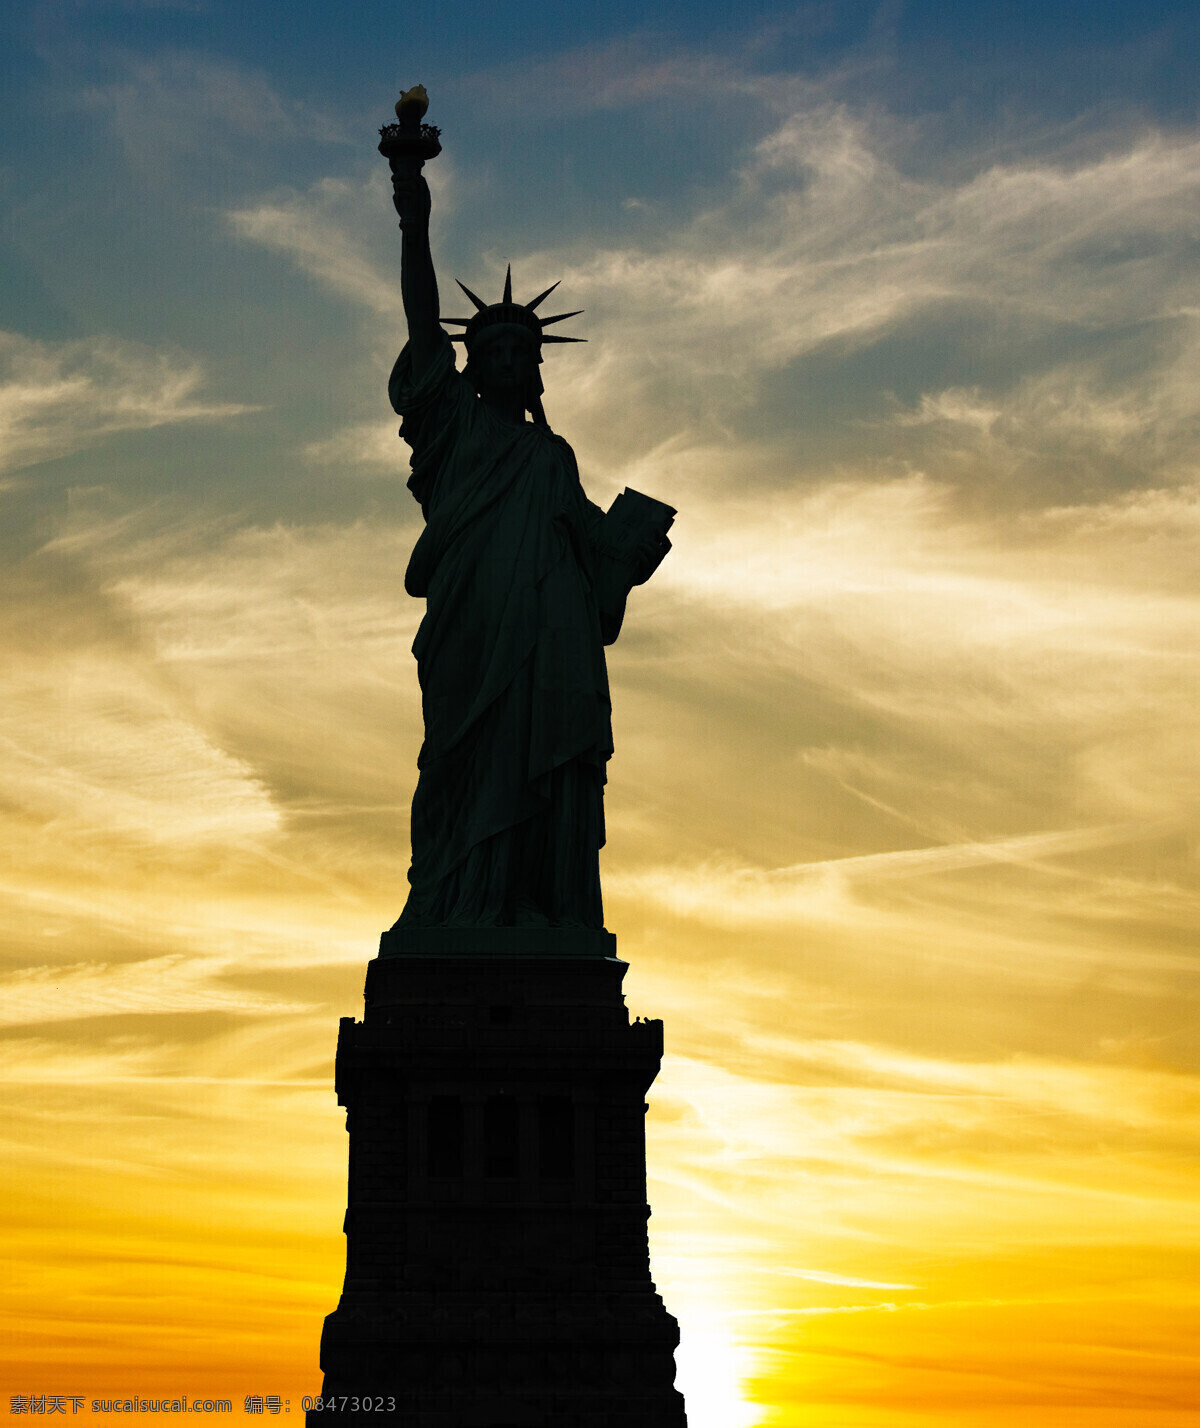 自由 女神像 剪影 纽约风景 自由女神像 标志性建筑 城市风景 建筑设计 环境家居